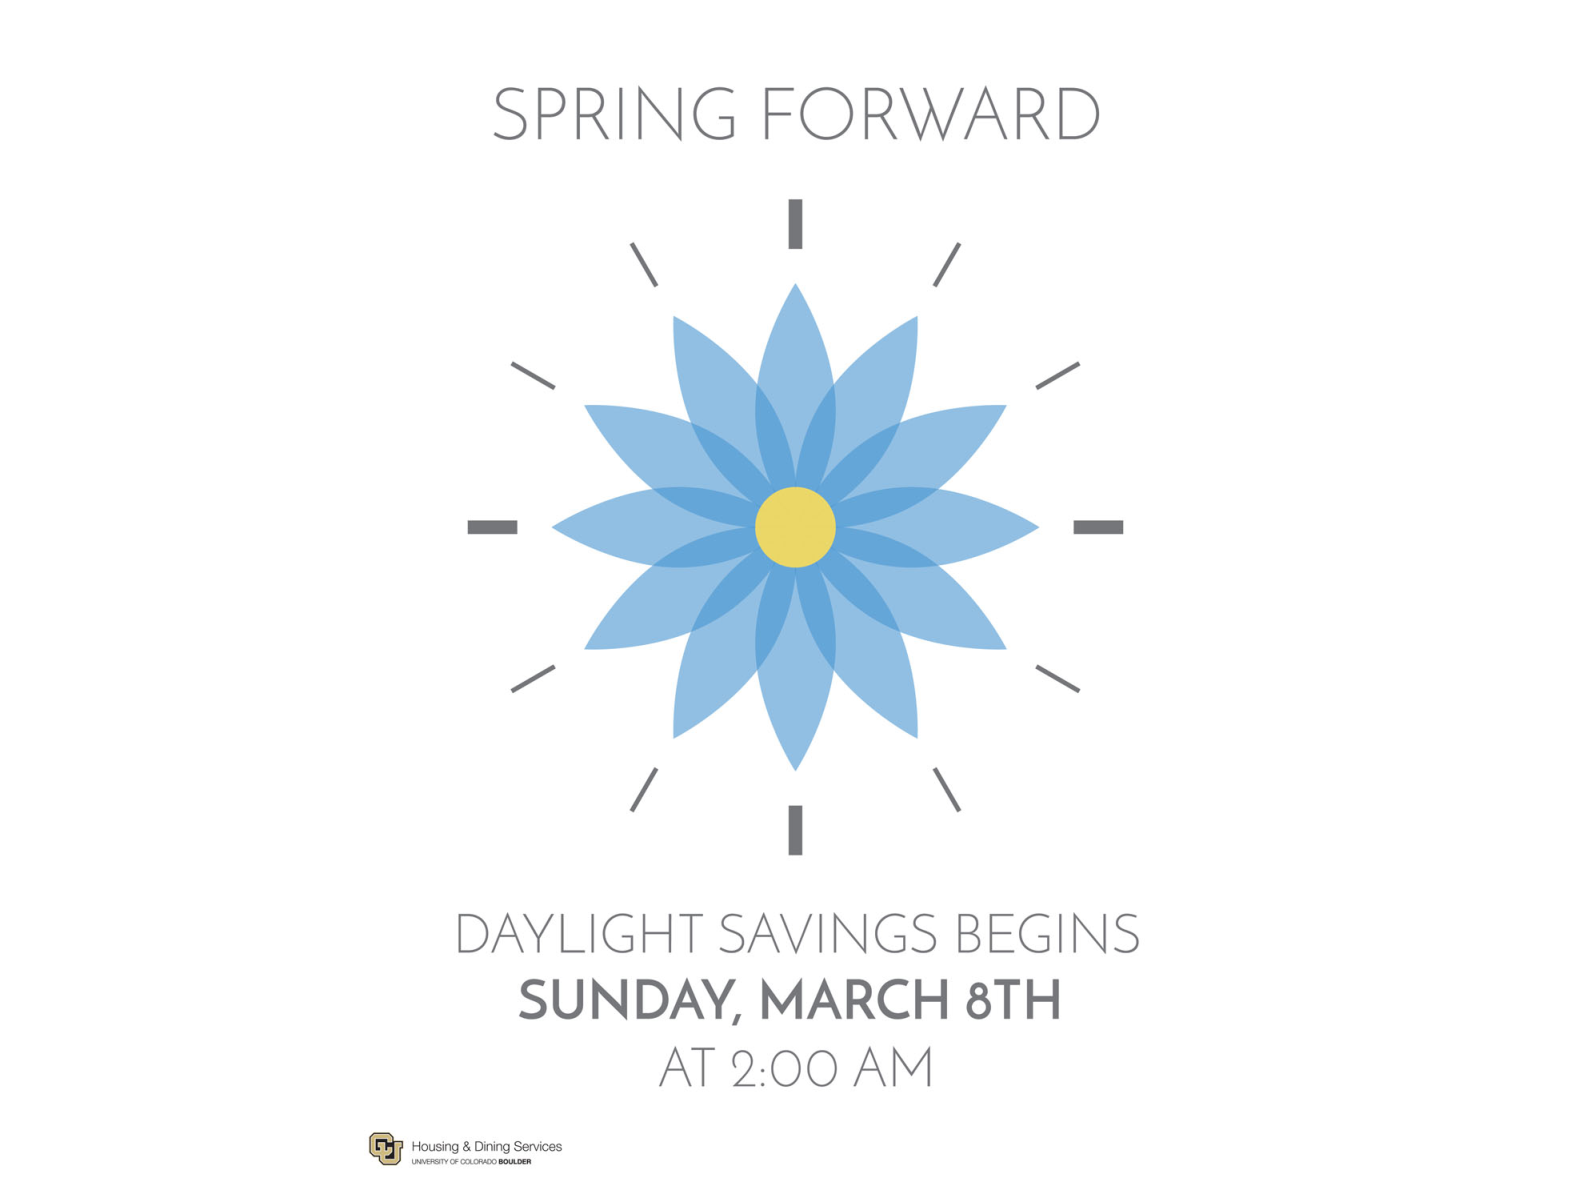 Spring Forward by Michael Reynoso on Dribbble